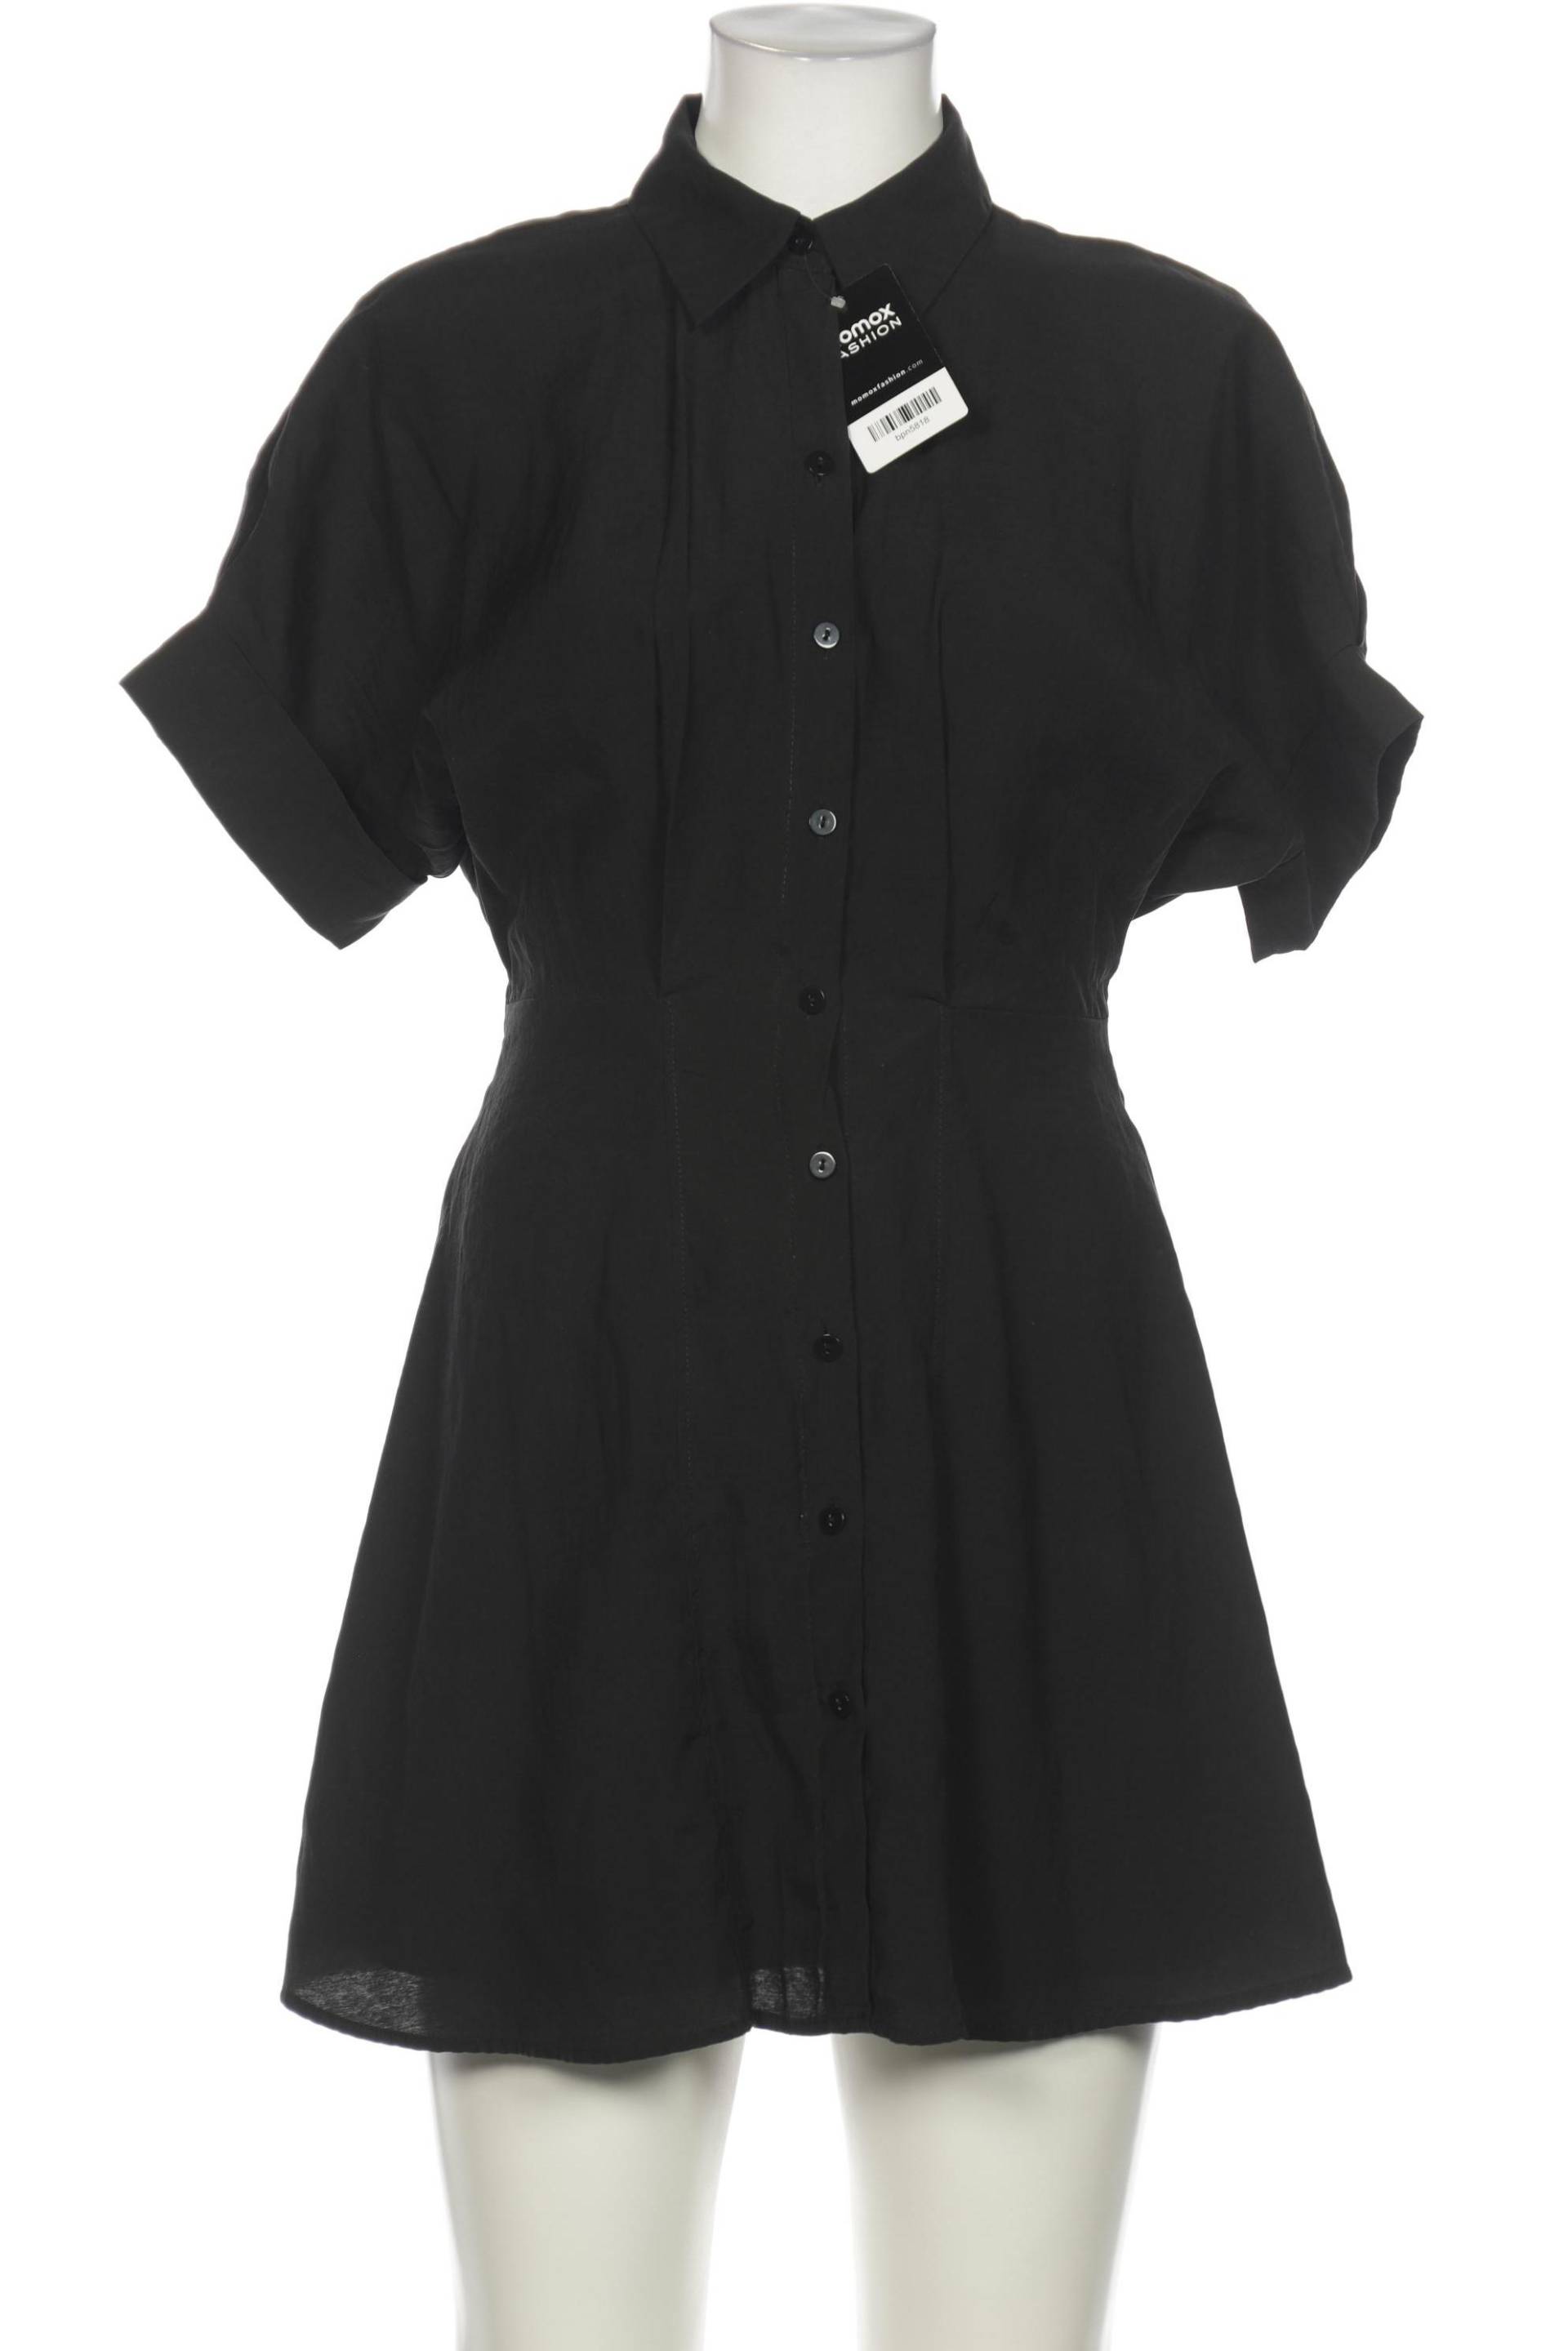 Zara Damen Kleid, schwarz, Gr. 36 von ZARA